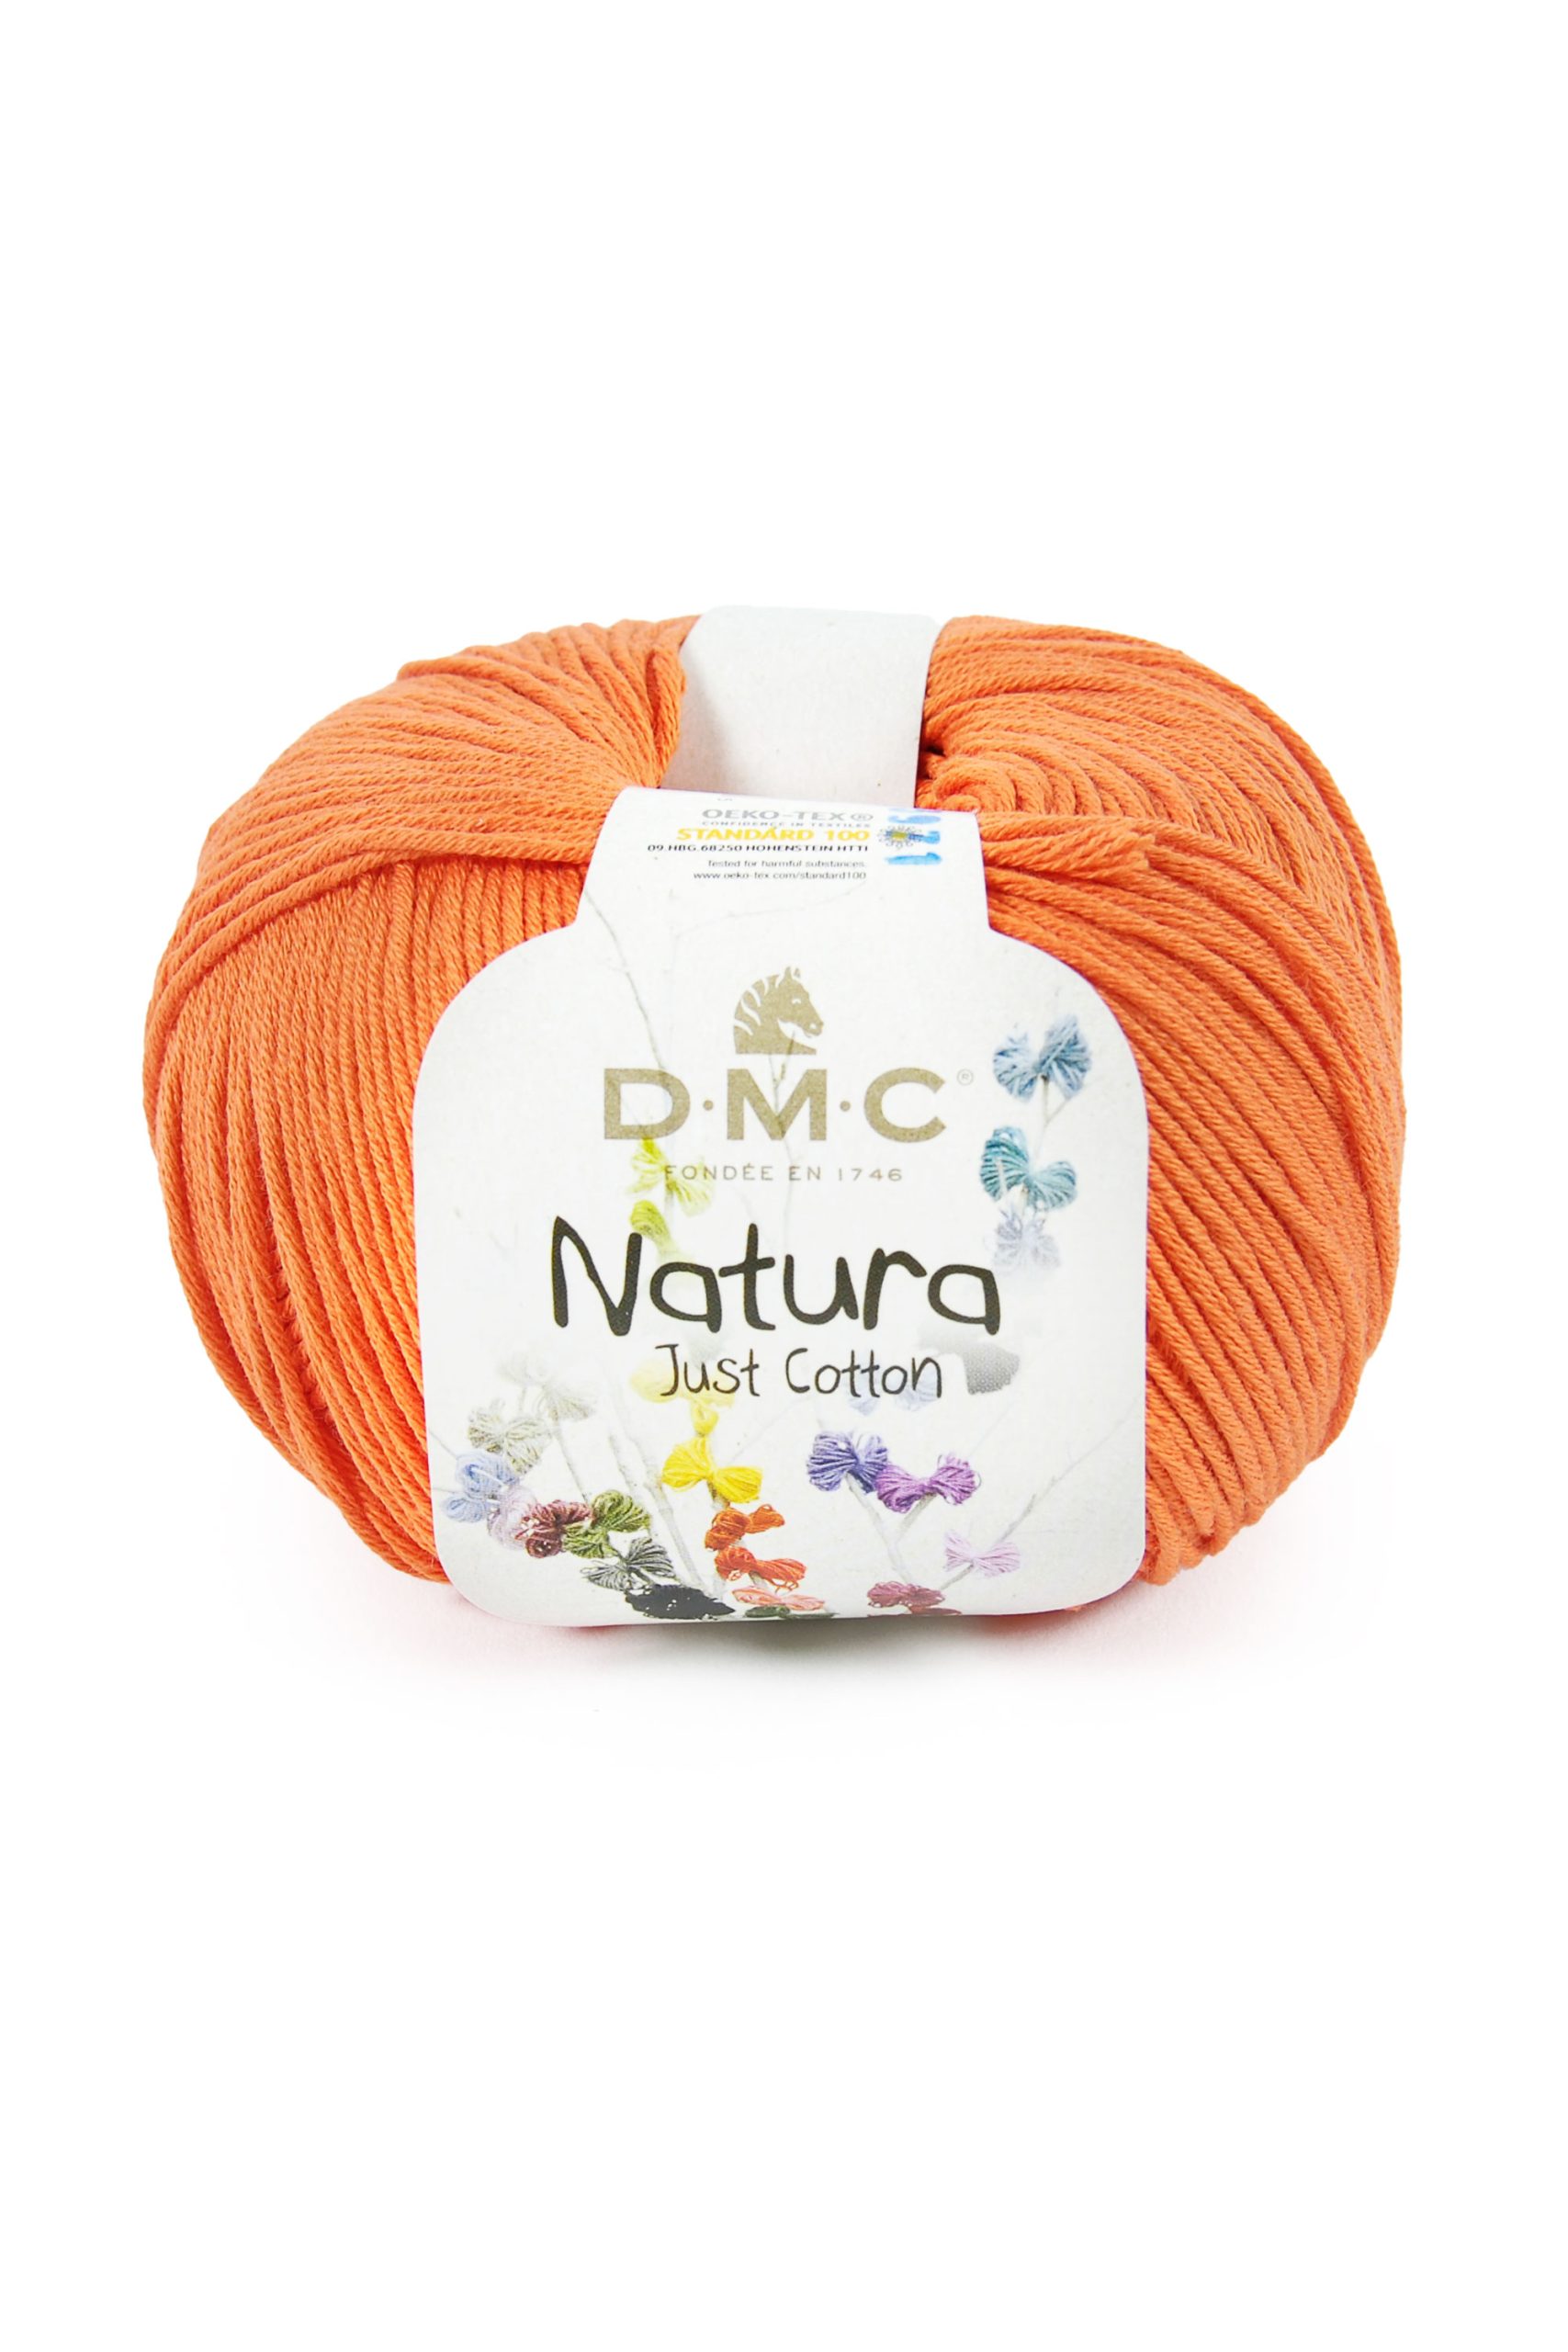 Cotone Dmc Natura Just Cotton Colore N105